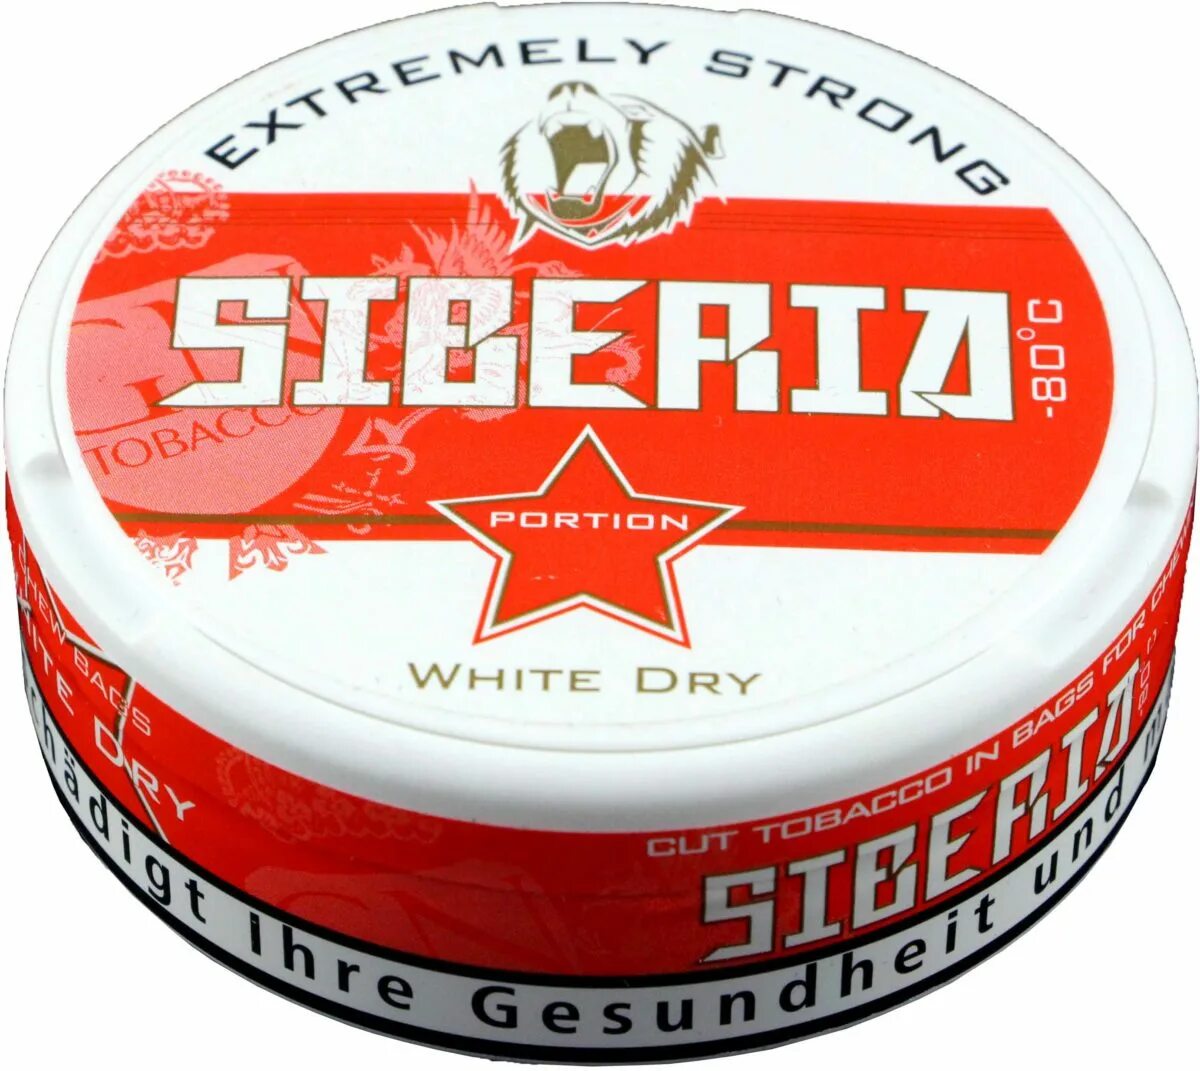 Жевательный табак Siberia White Dry, 13 гр.. Siberia Red White Dry. Siberia White Dry Slim. Снюс Siberia White Dry Slim. Сибирь красная купить